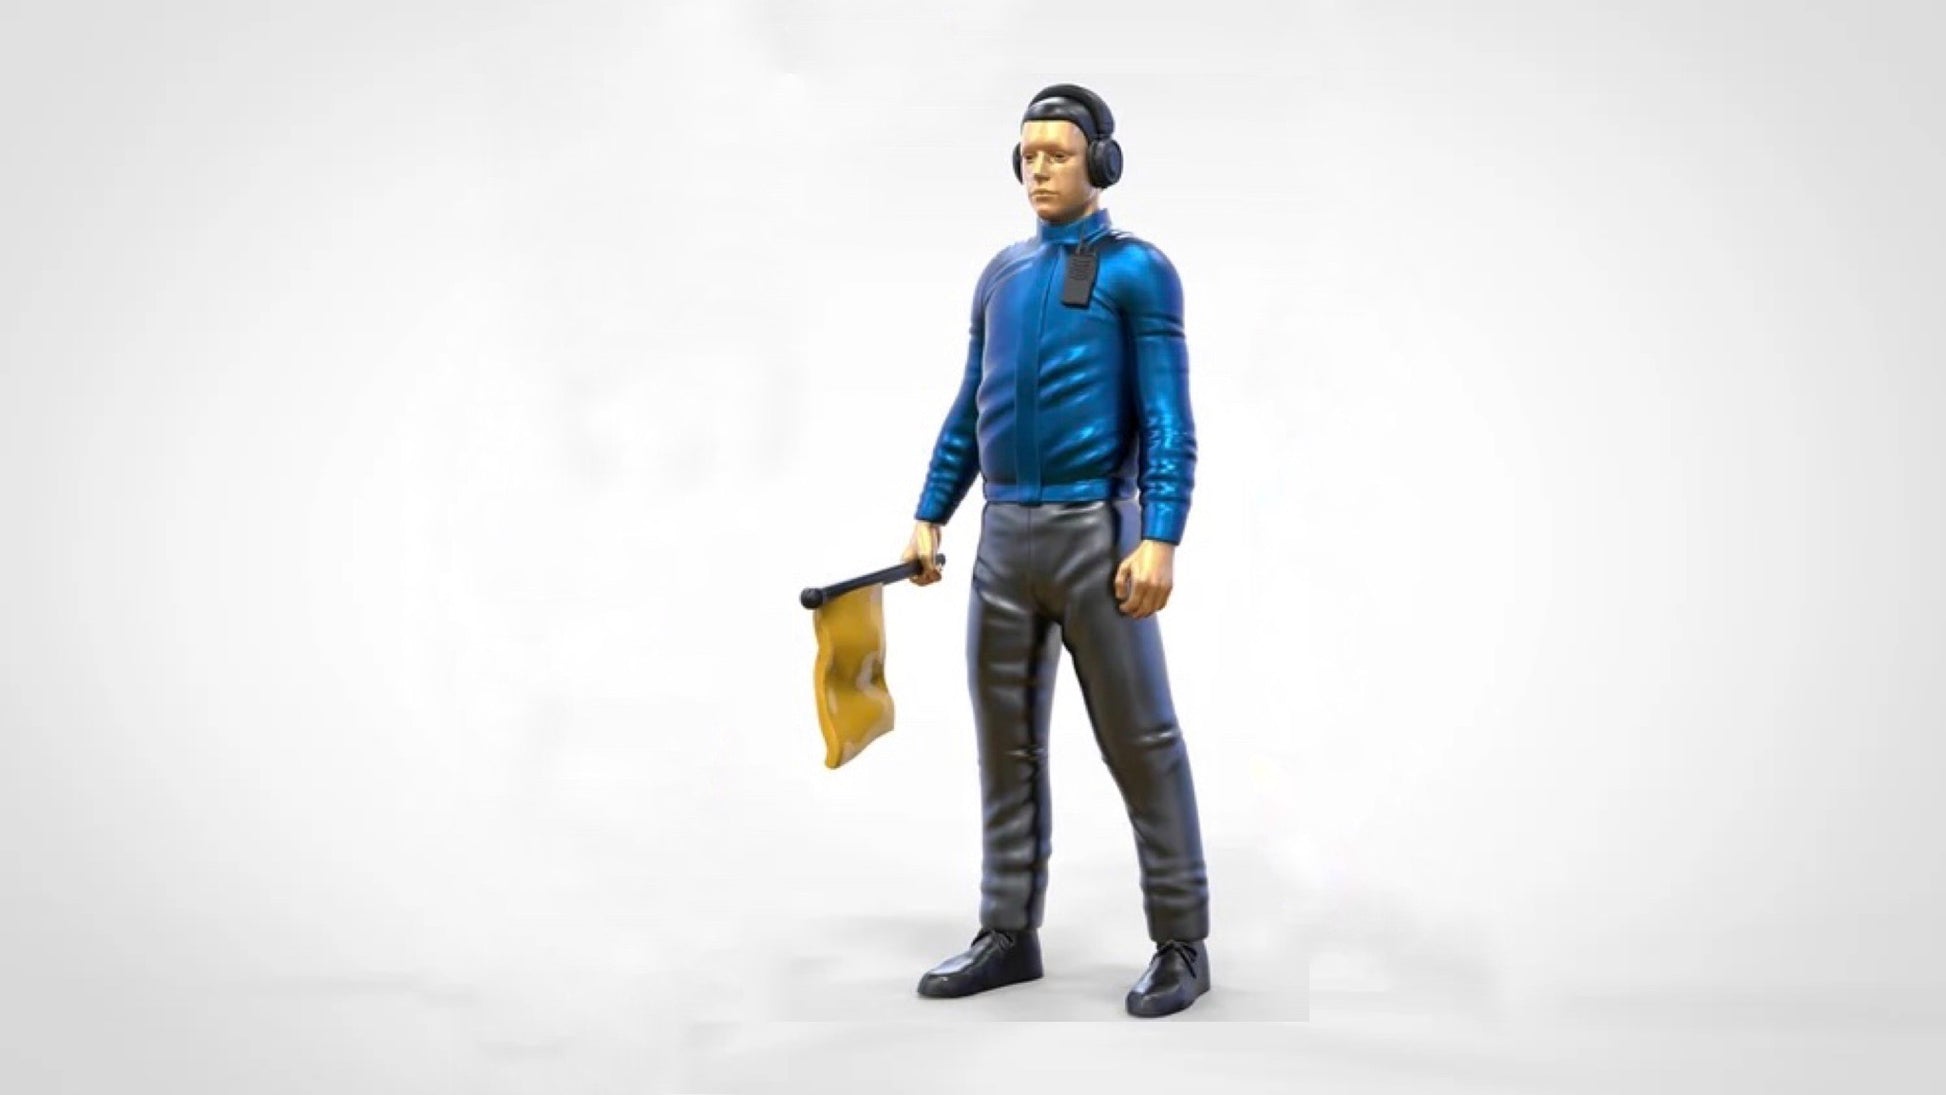 Produktfoto Diorama und Modellbau Miniatur Figur: Streckenposten Set, 6 Figuren